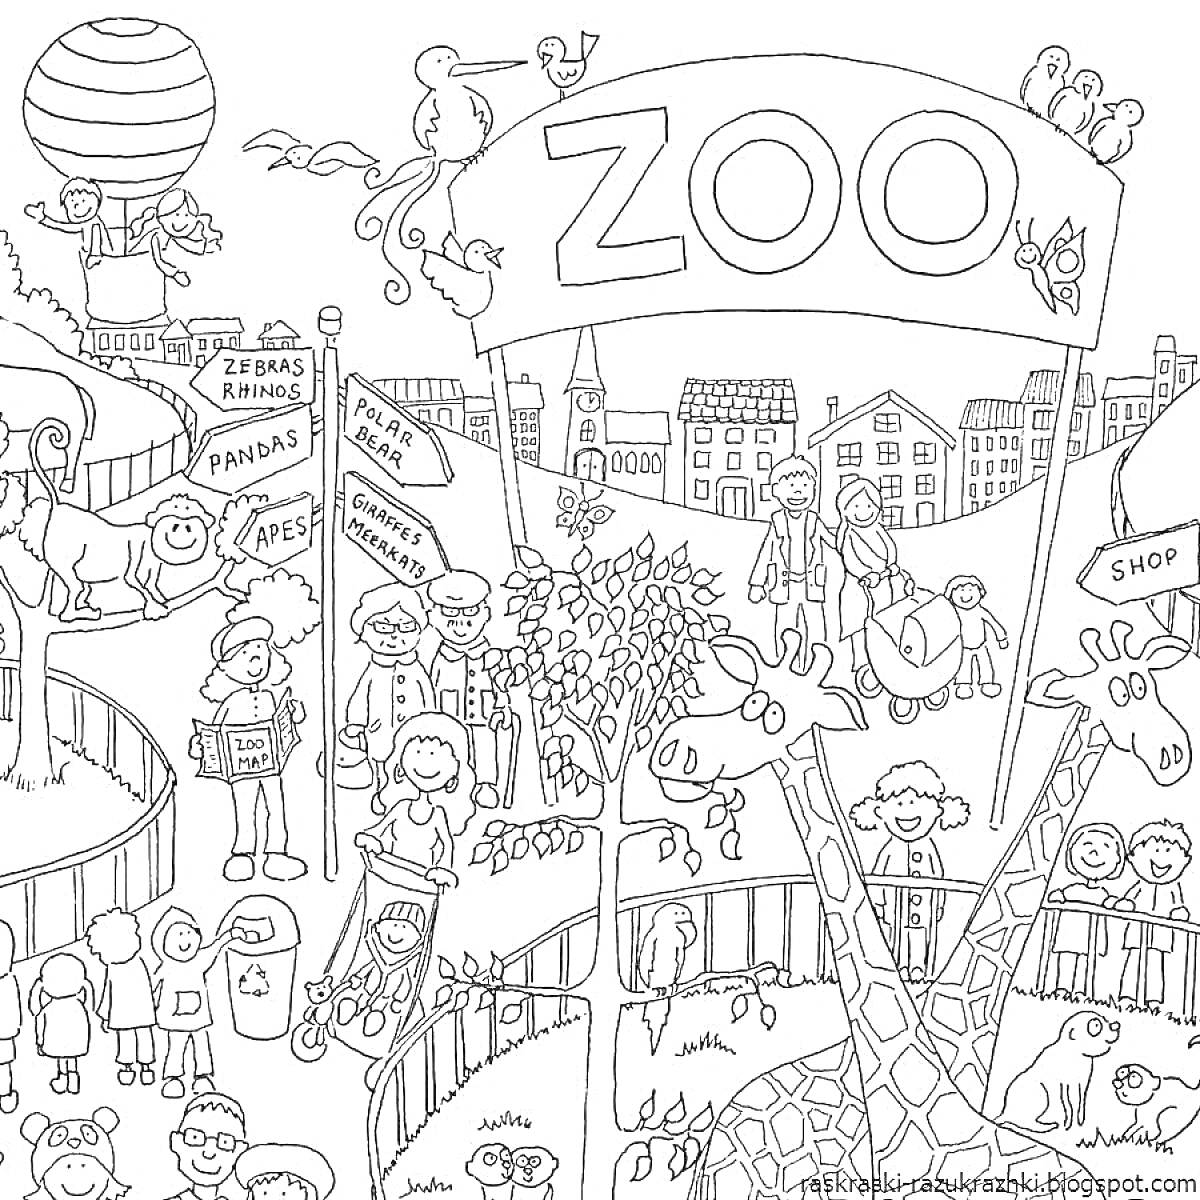 Раскраска Зоопарк с животными (жирафы, гиббоны), указателями (панды, антилопы, обезьяны, носороги), воздушным шаром, магазинами, посетителями, деревьями и птицами